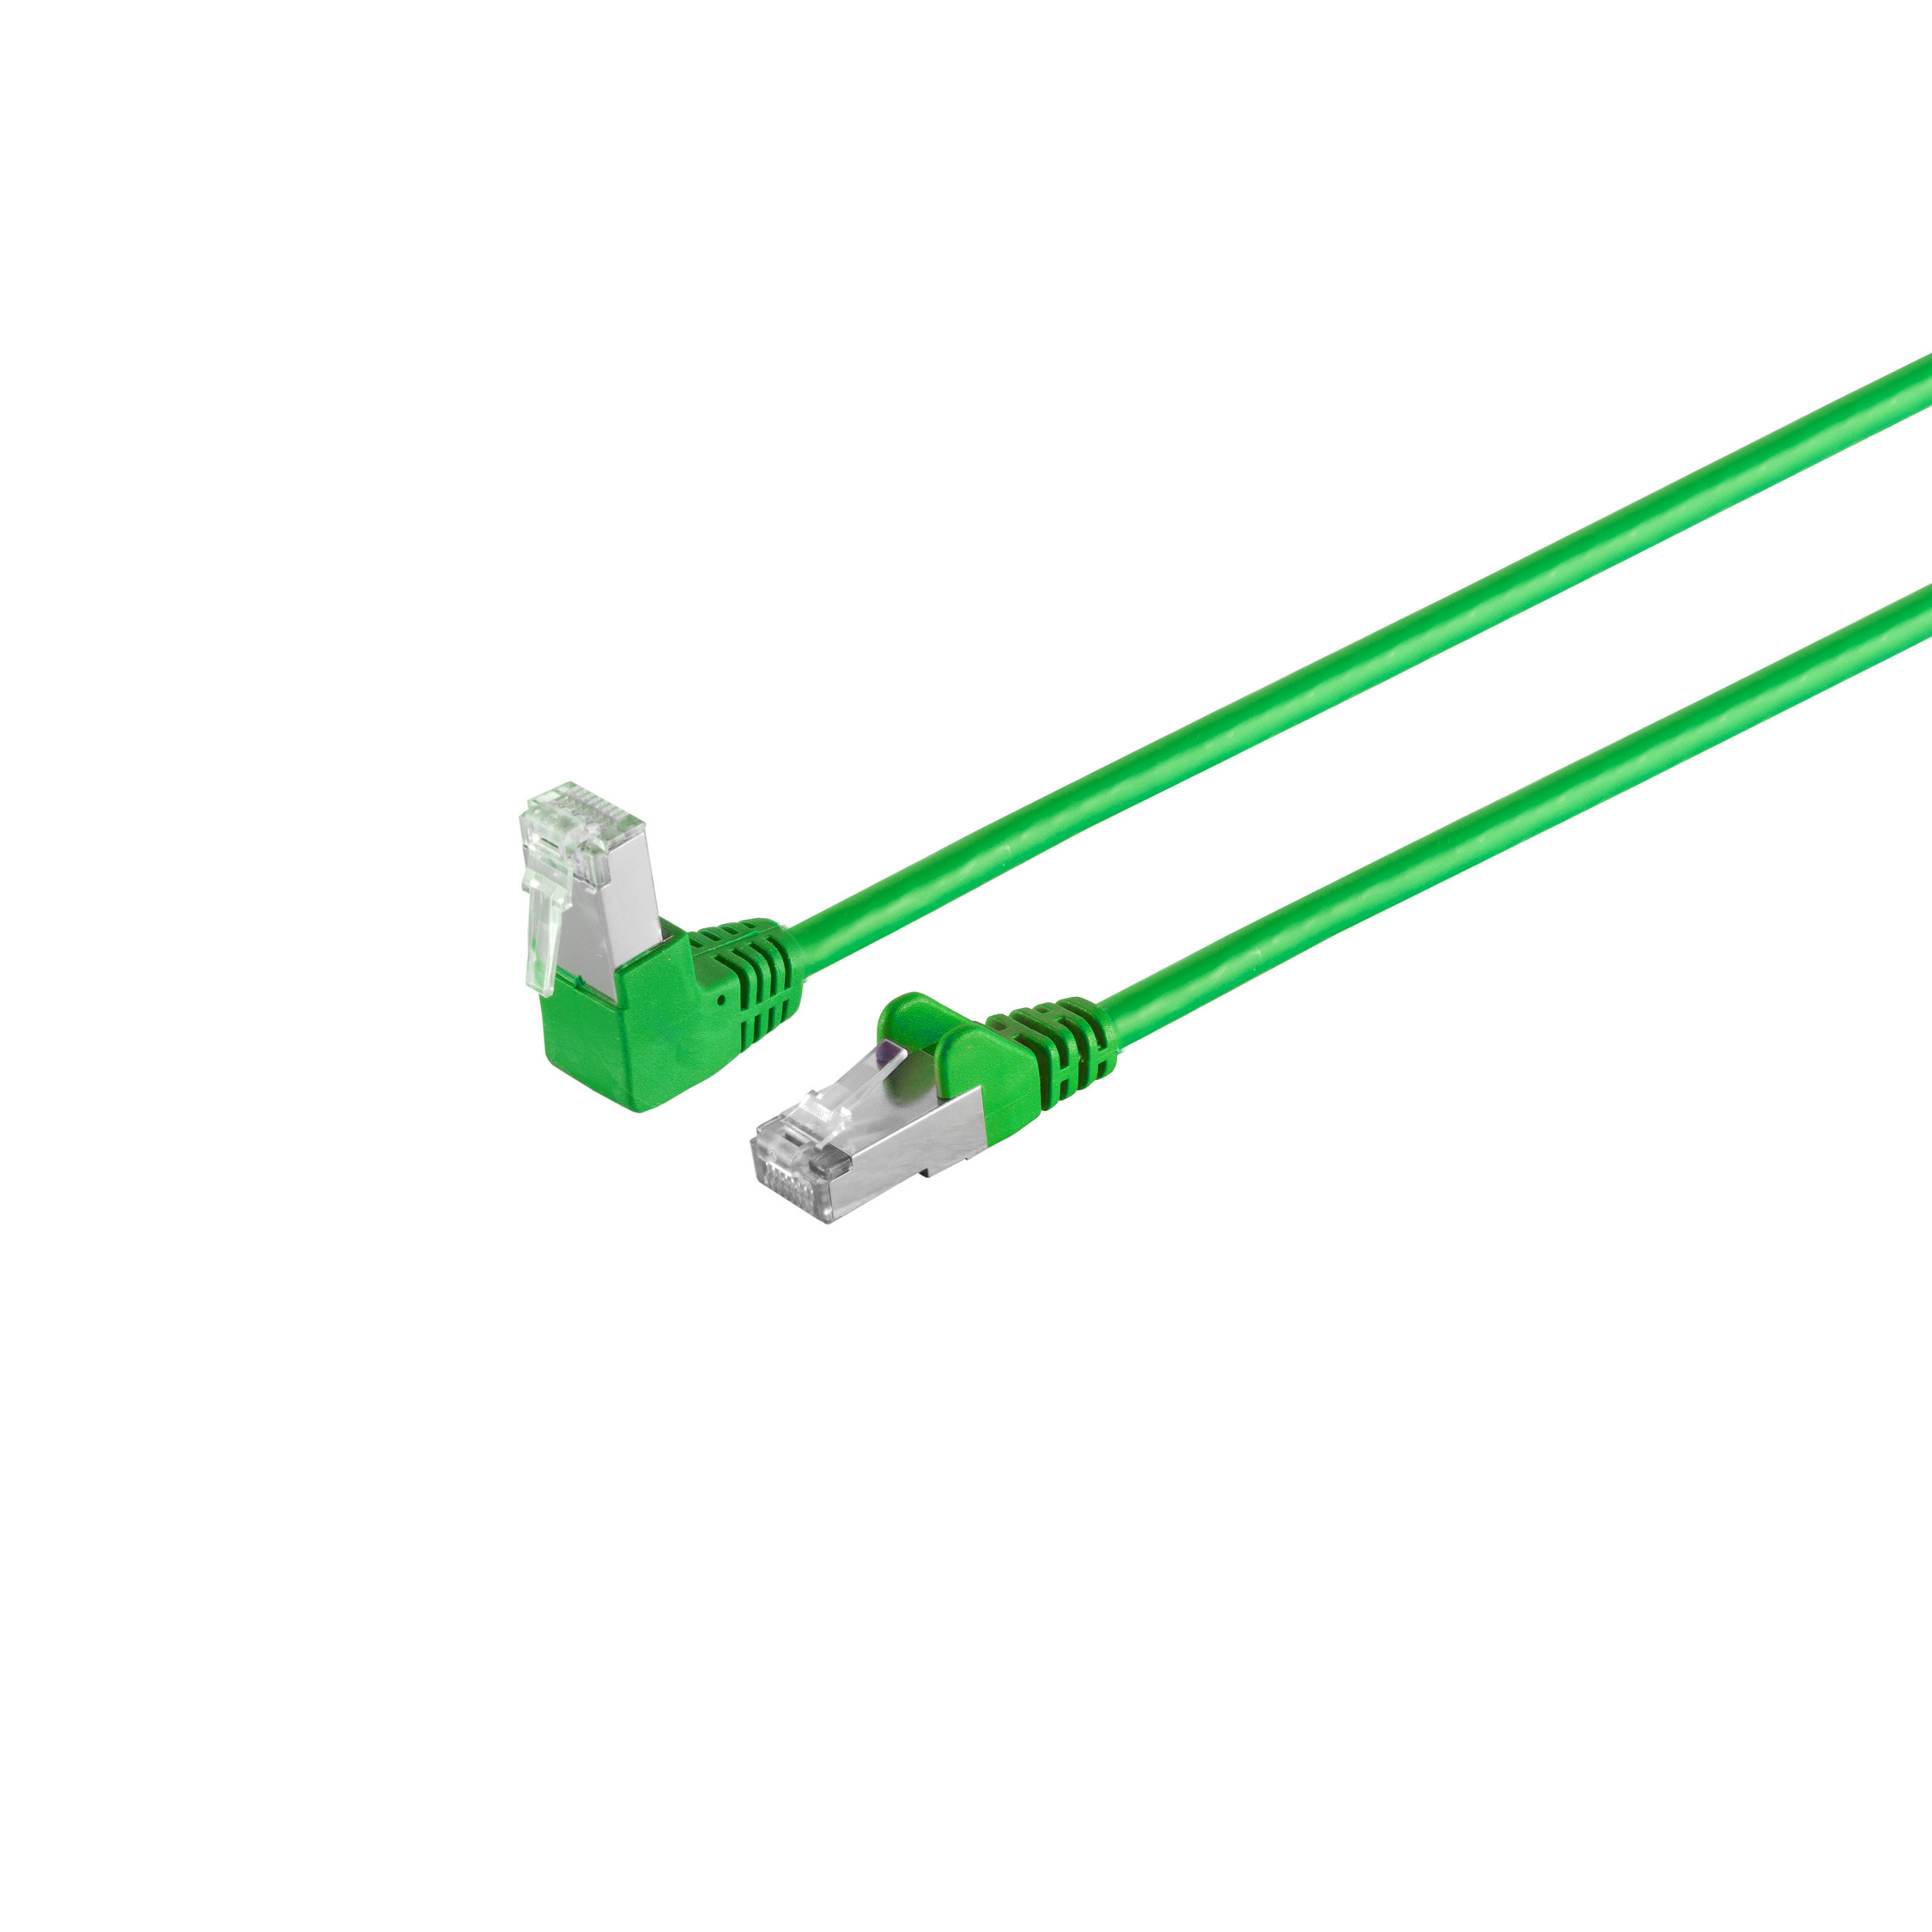 S/CONN MAXIMUM 0,5m, cat 0,50 Winkel-gerade RJ45, CONNECTIVITY Patchkabel PIMF Kabel 6 S/FTP m grün